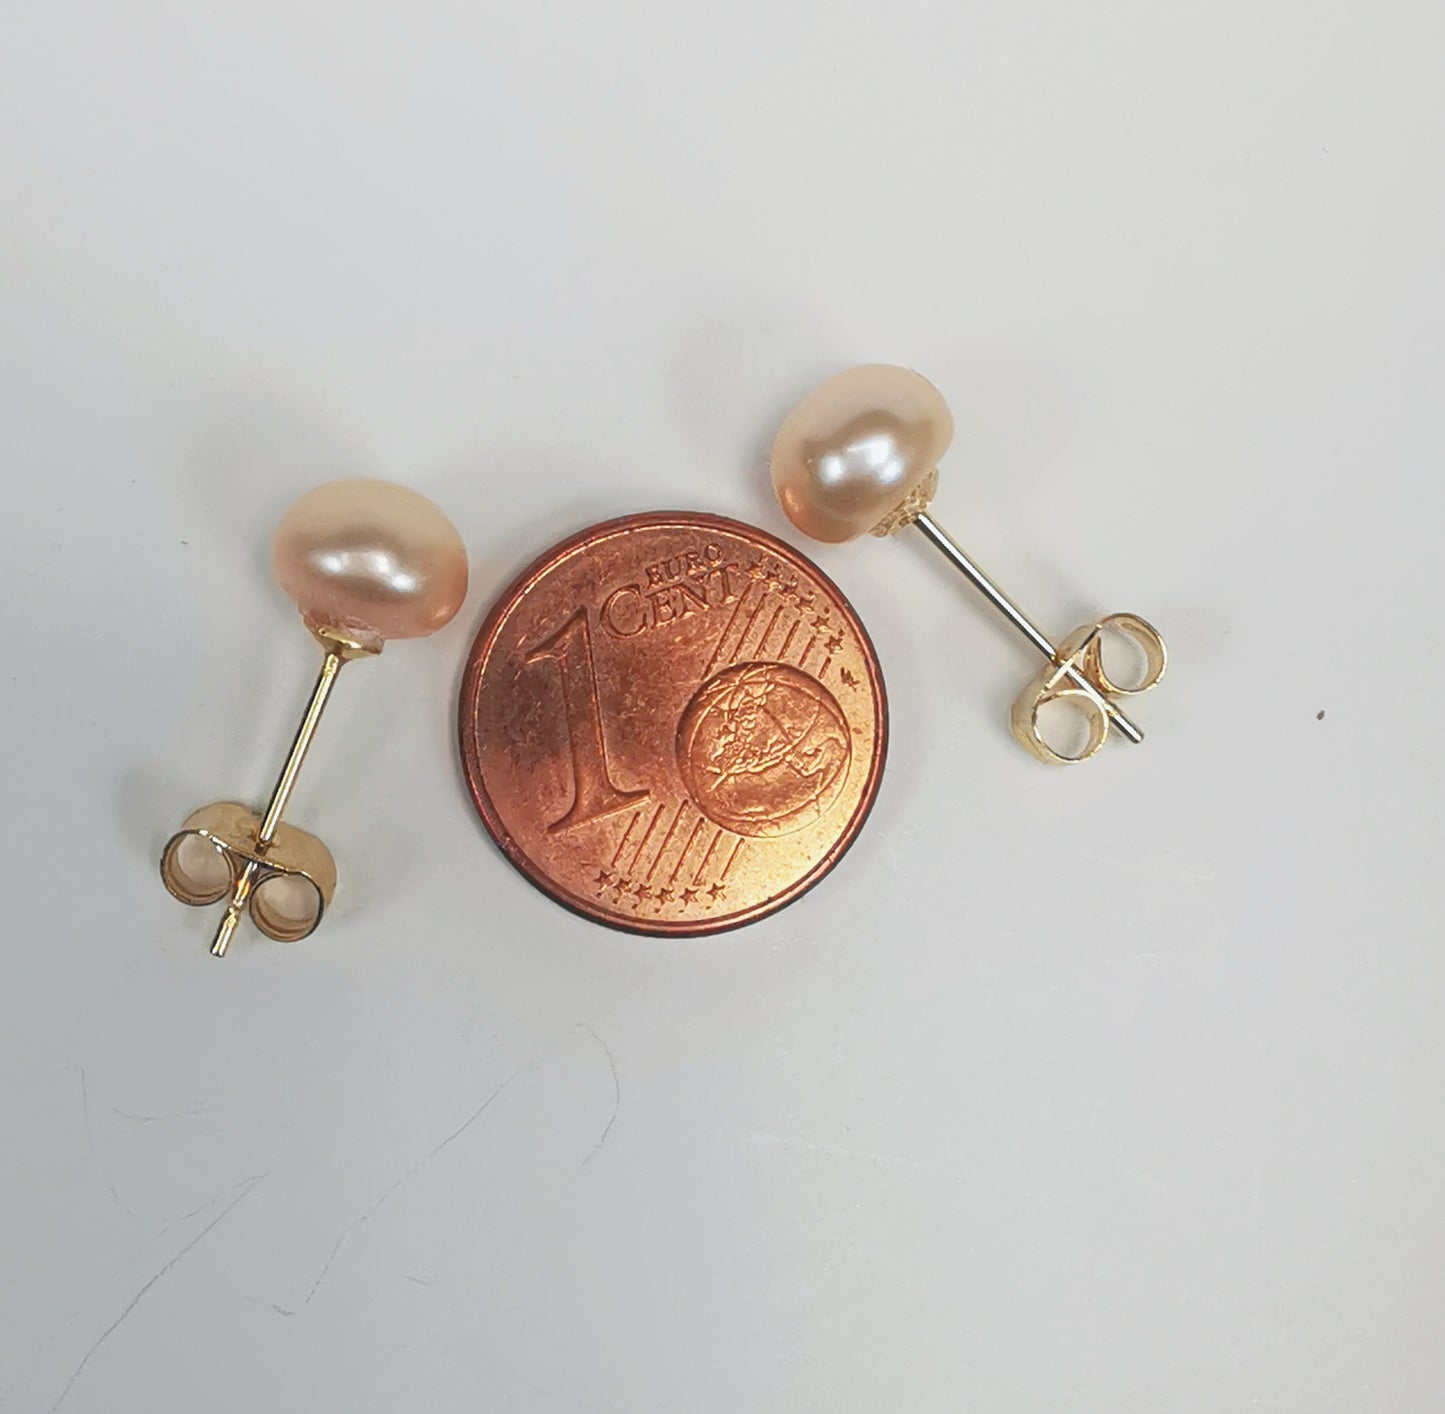 Boucles d'oreilles perles de culture rose 7mm sur clous plaqués or. Présentées perles en haut, avec une pièce de 1 centime, entre les deux, sur un fond blanc. Vue de dessus.